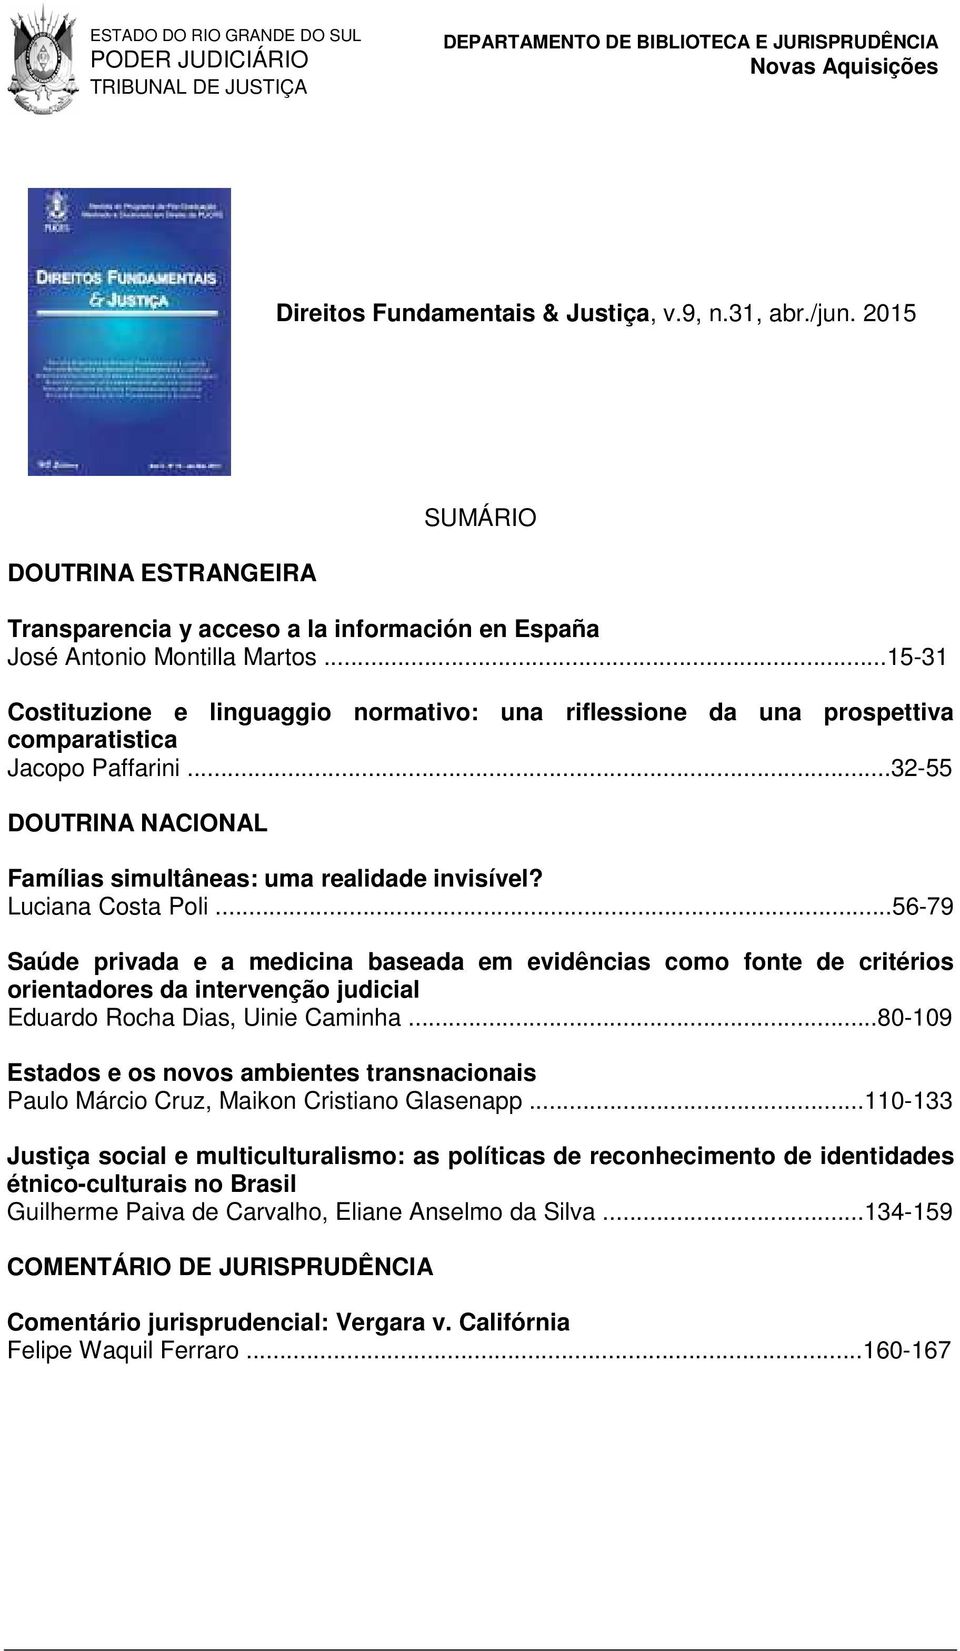 Luciana Costa Poli...56-79 Saúde privada e a medicina baseada em evidências como fonte de critérios orientadores da intervenção judicial Eduardo Rocha Dias, Uinie Caminha.